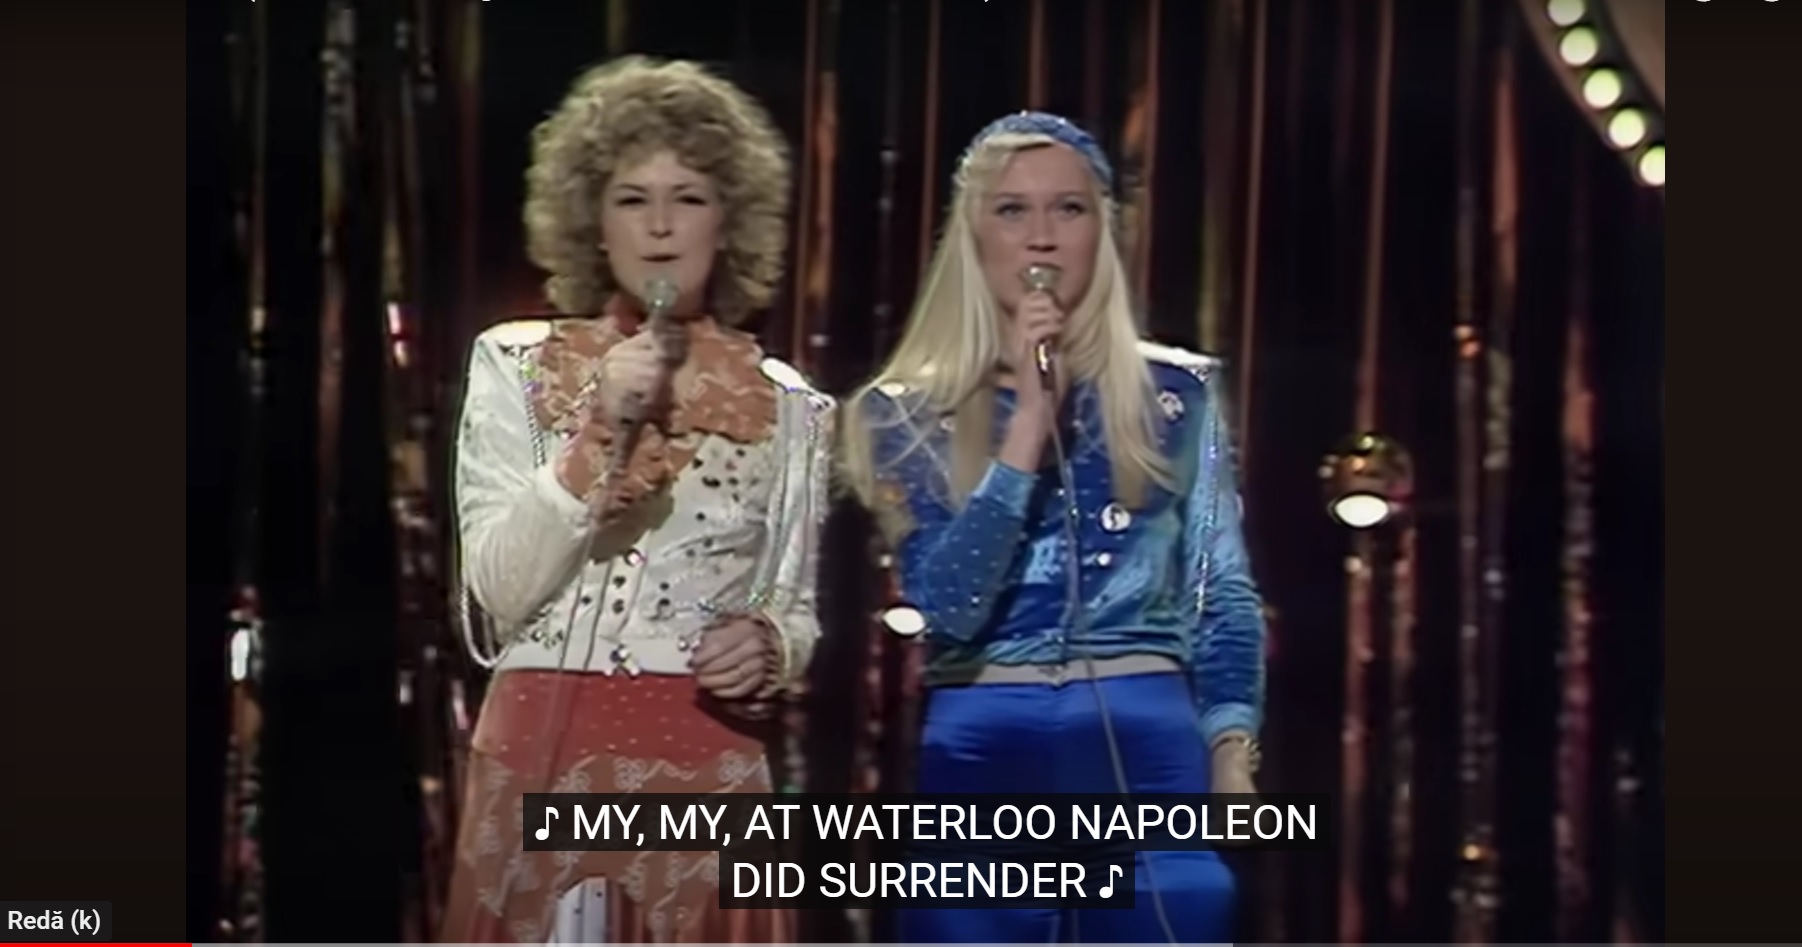 cum-a-inceput-povestea-trupei-abba-care-are-succes-de-peste-50-de-ani/-in-culisele-piesei-care-i-a-lansat-pe-suedezi-dupa-ce-au-castigat-eurovision-in-1974